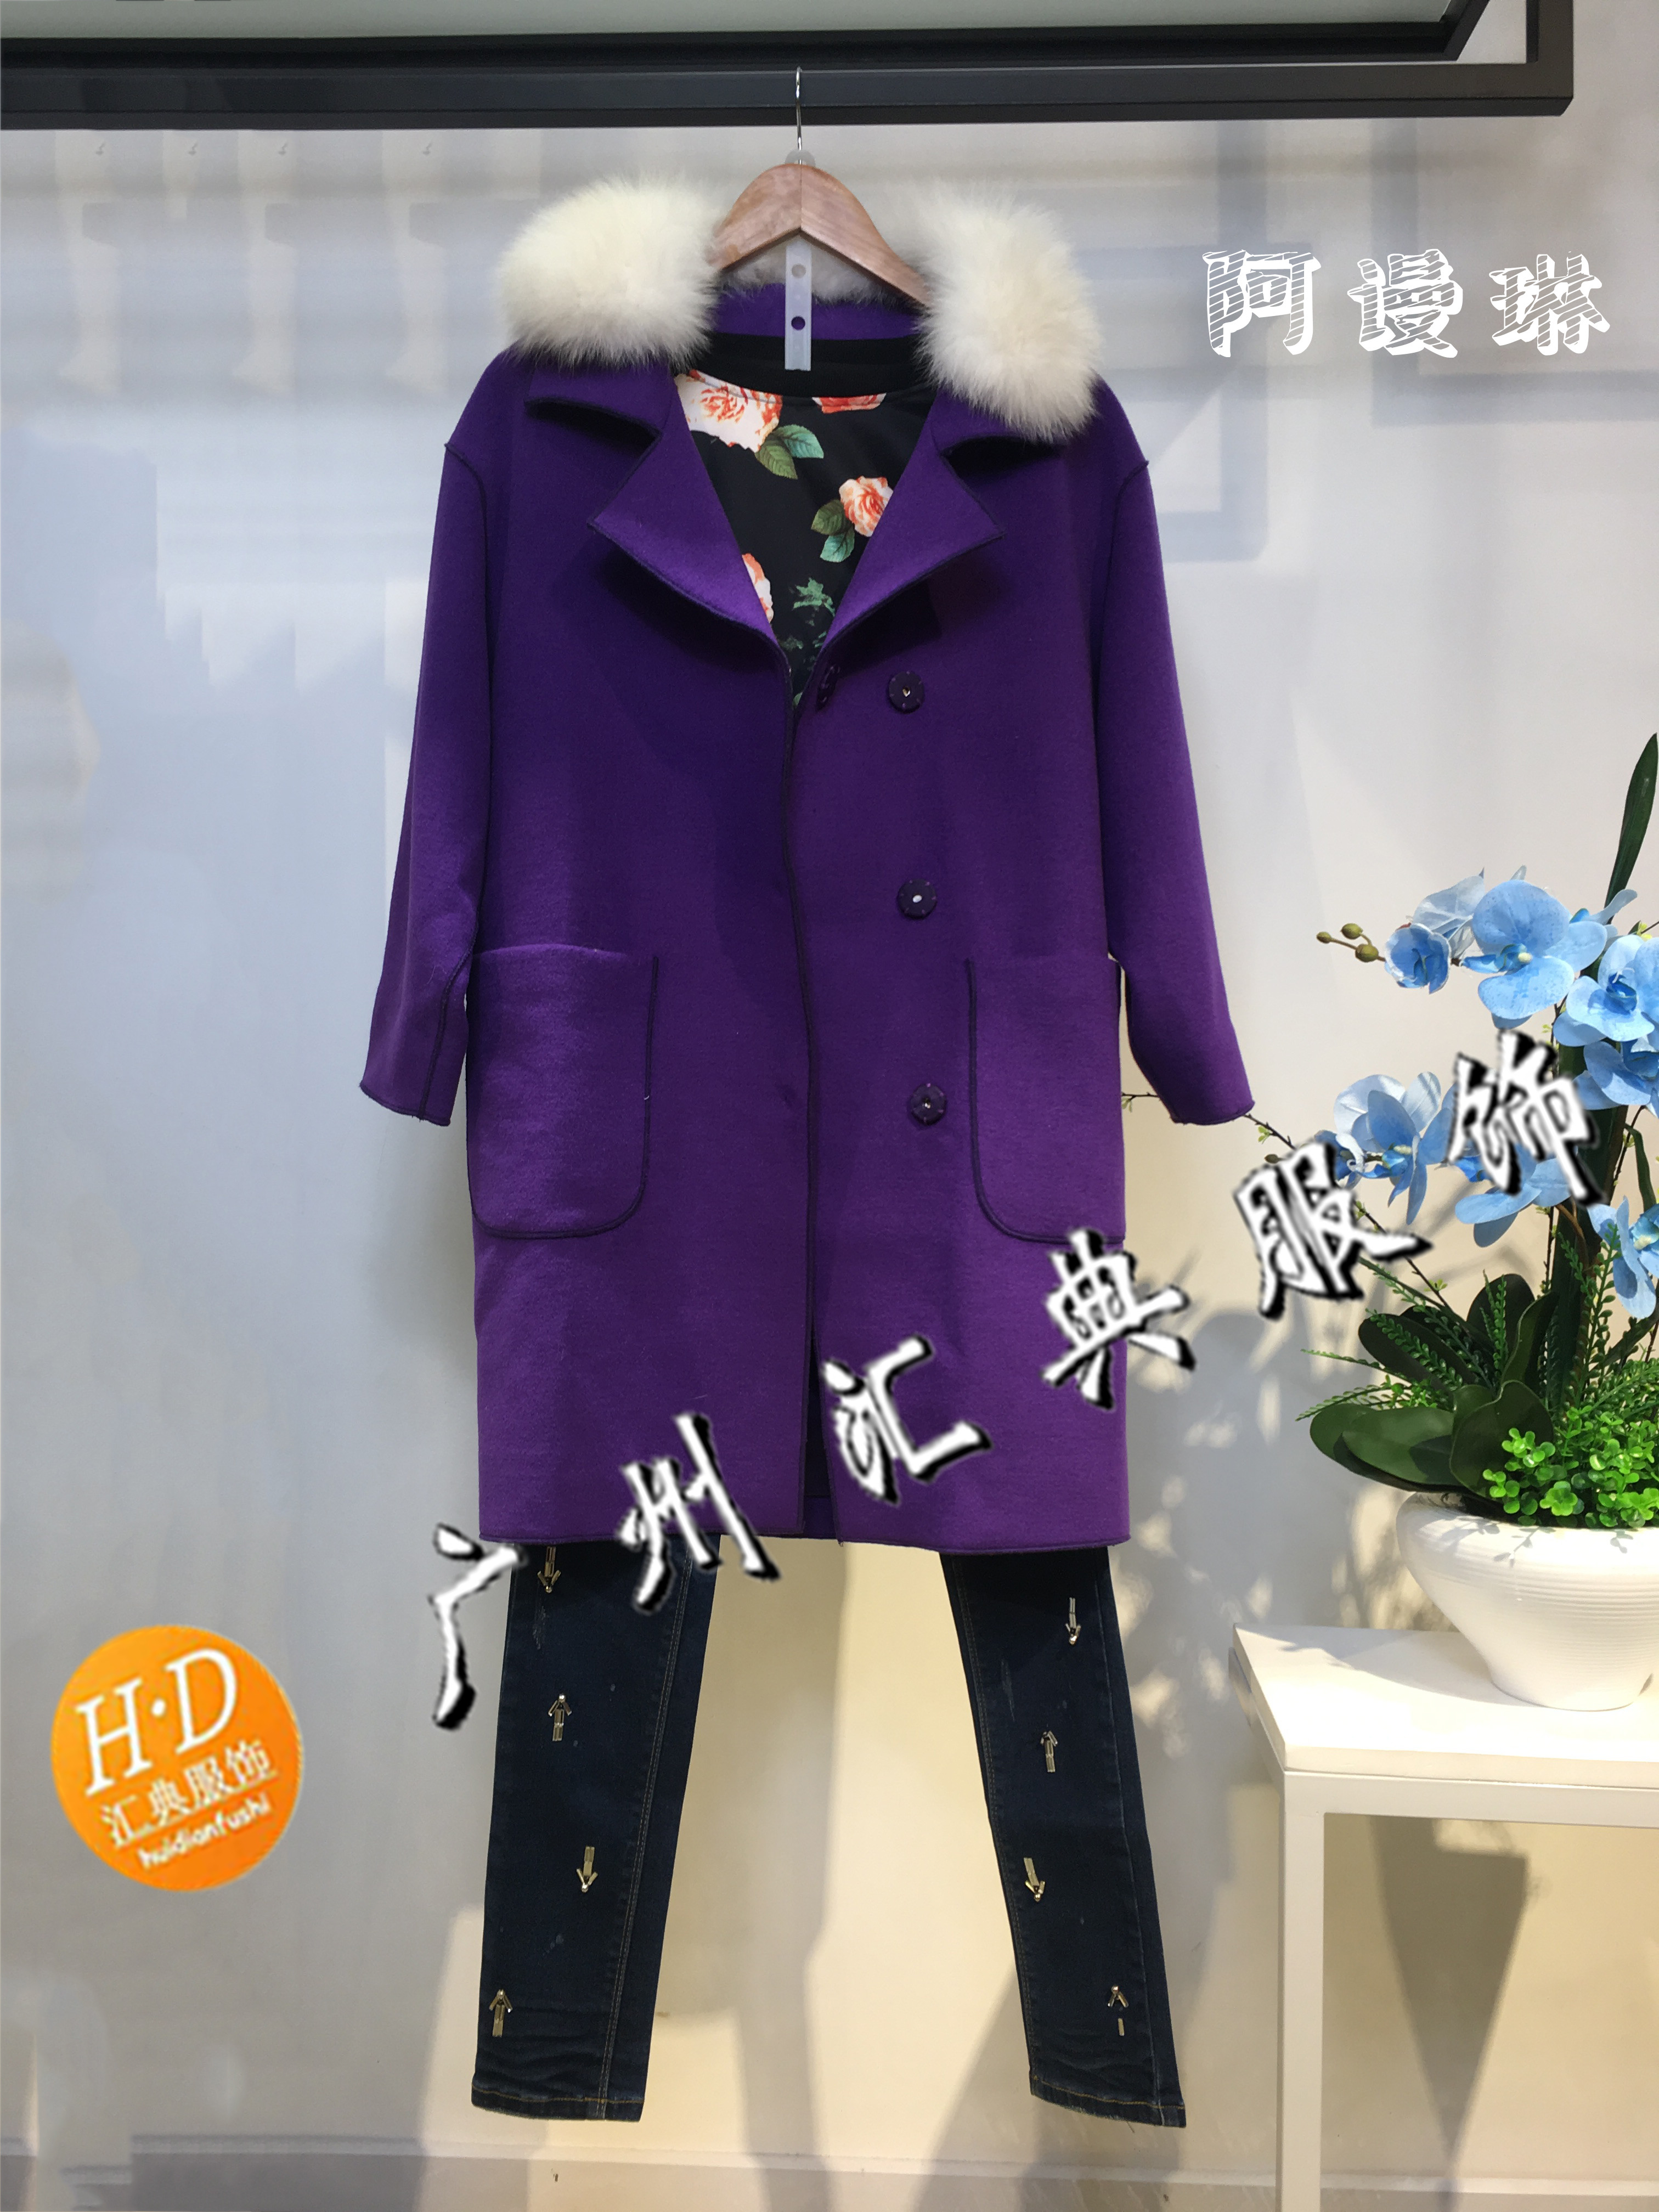 上海品牌折扣女装尾货曼诺比菲服装批发网女装尾货秋冬新款上新